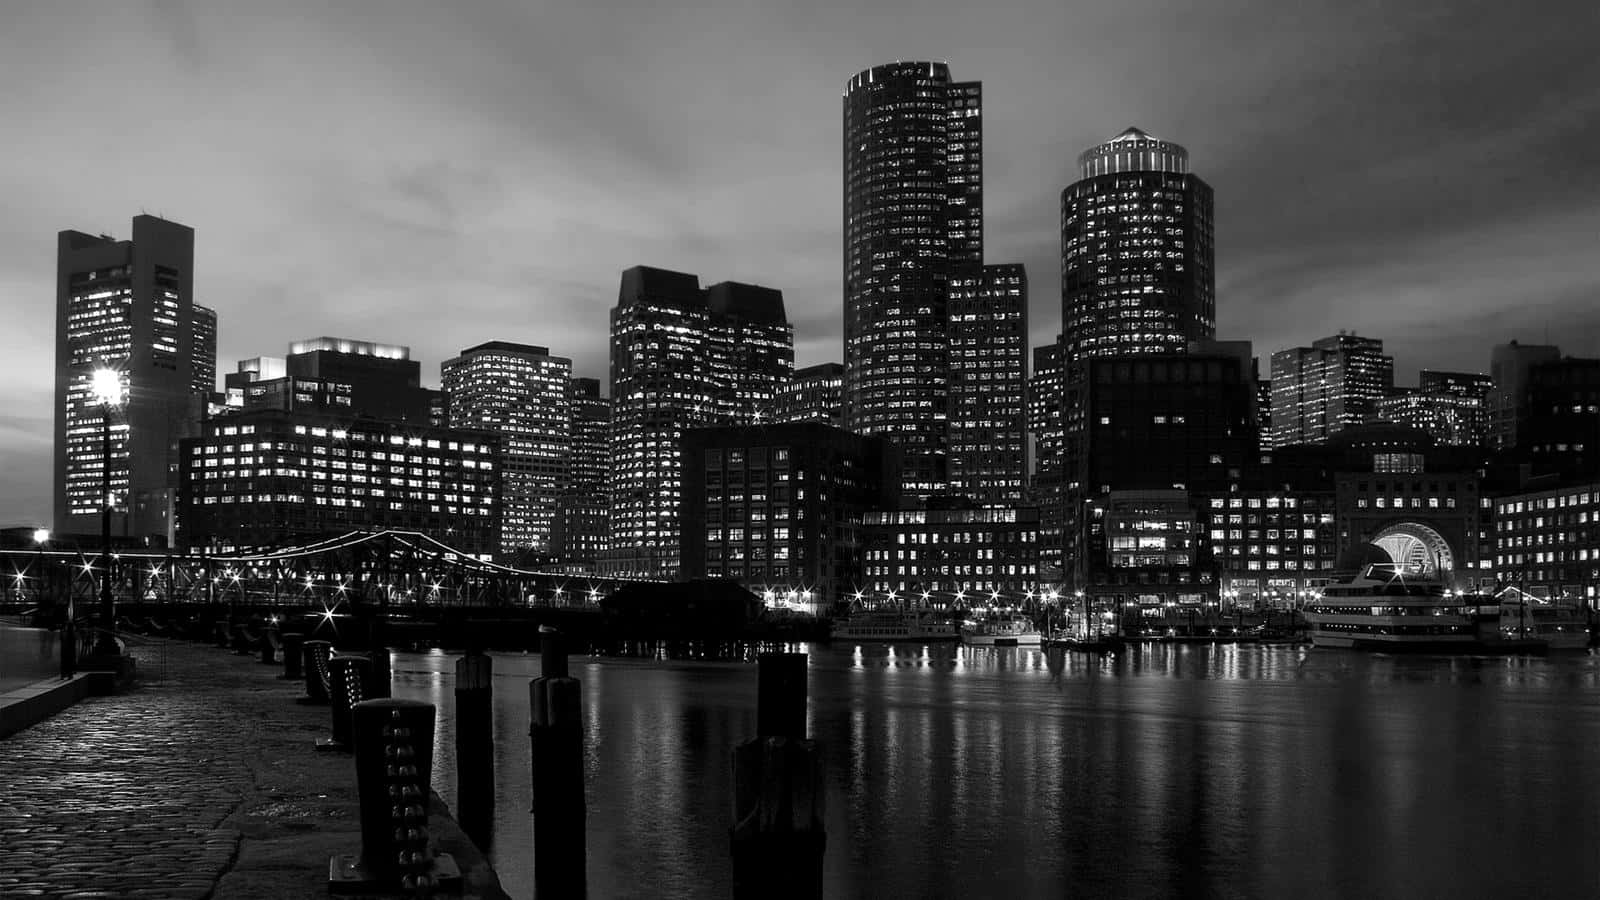 Snyggsvartvit Bild På Boston.